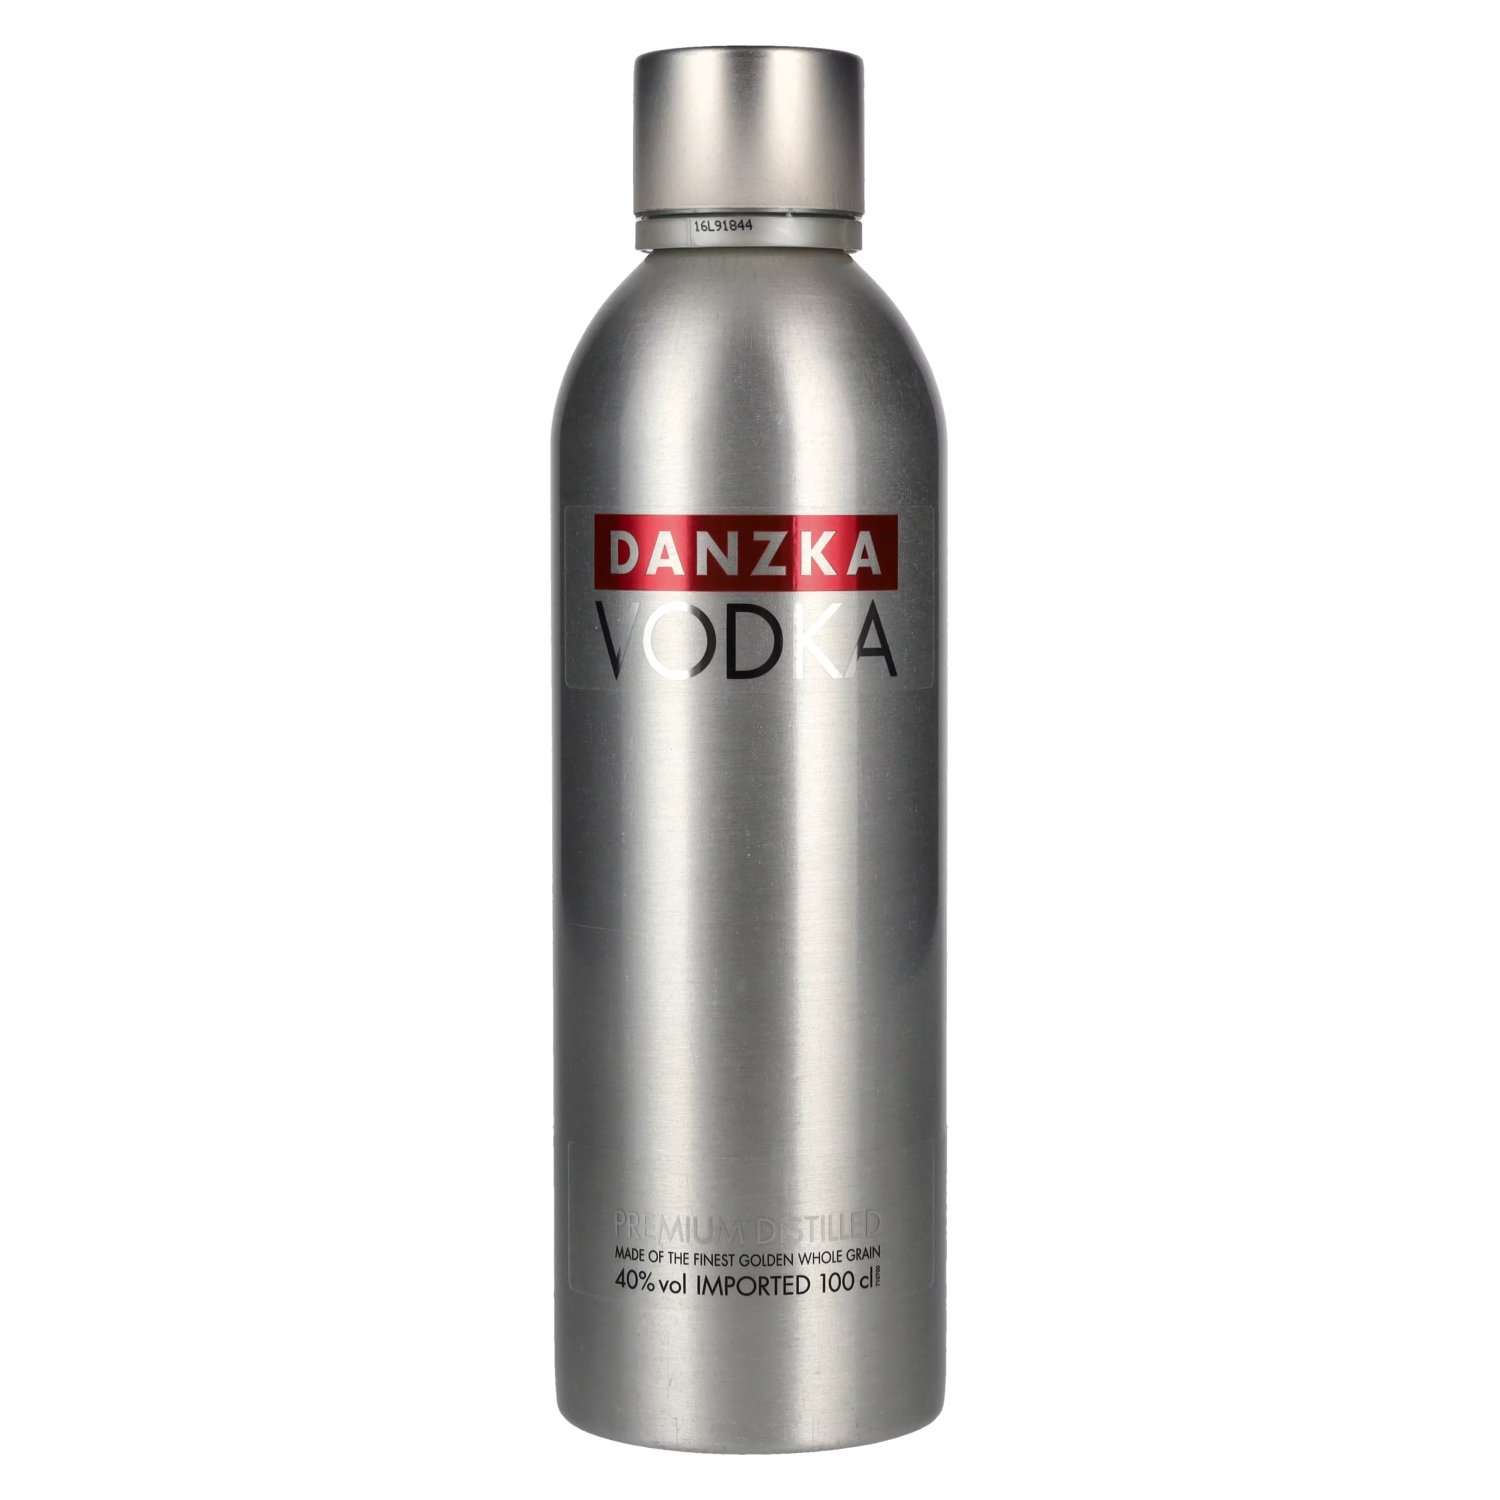 40% ORIGINAL Danzka Vol. 1l Premium Vodka Distilled